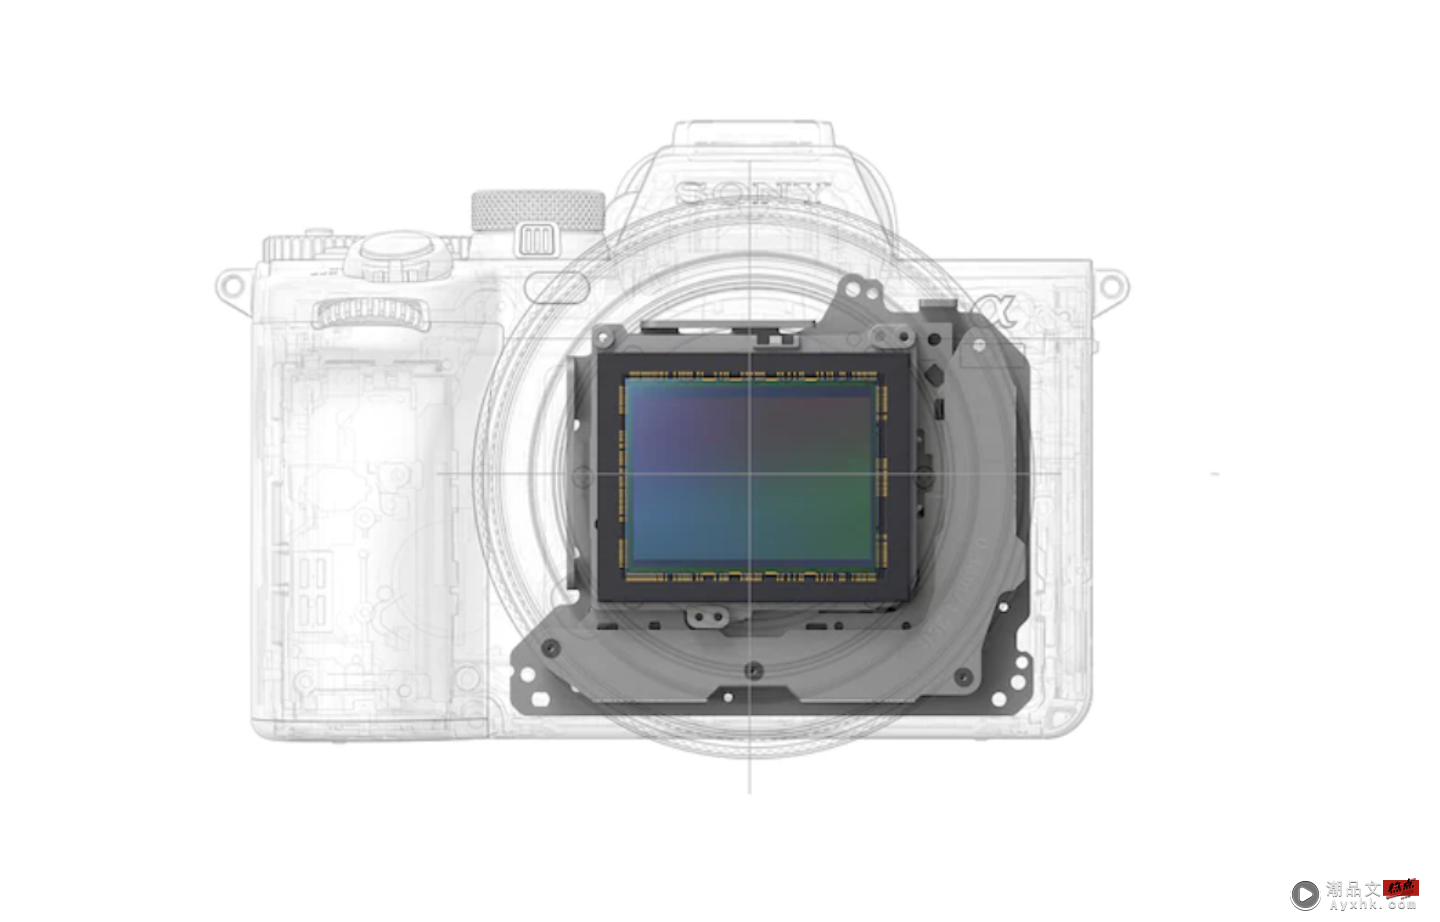 Sony 新款无反单眼相机 α7 IV 亮相！具备 33MP 感光元件和旗舰级的 BIONZ XR 处理器，终于有全翻转萤幕了！ 数码科技 图2张